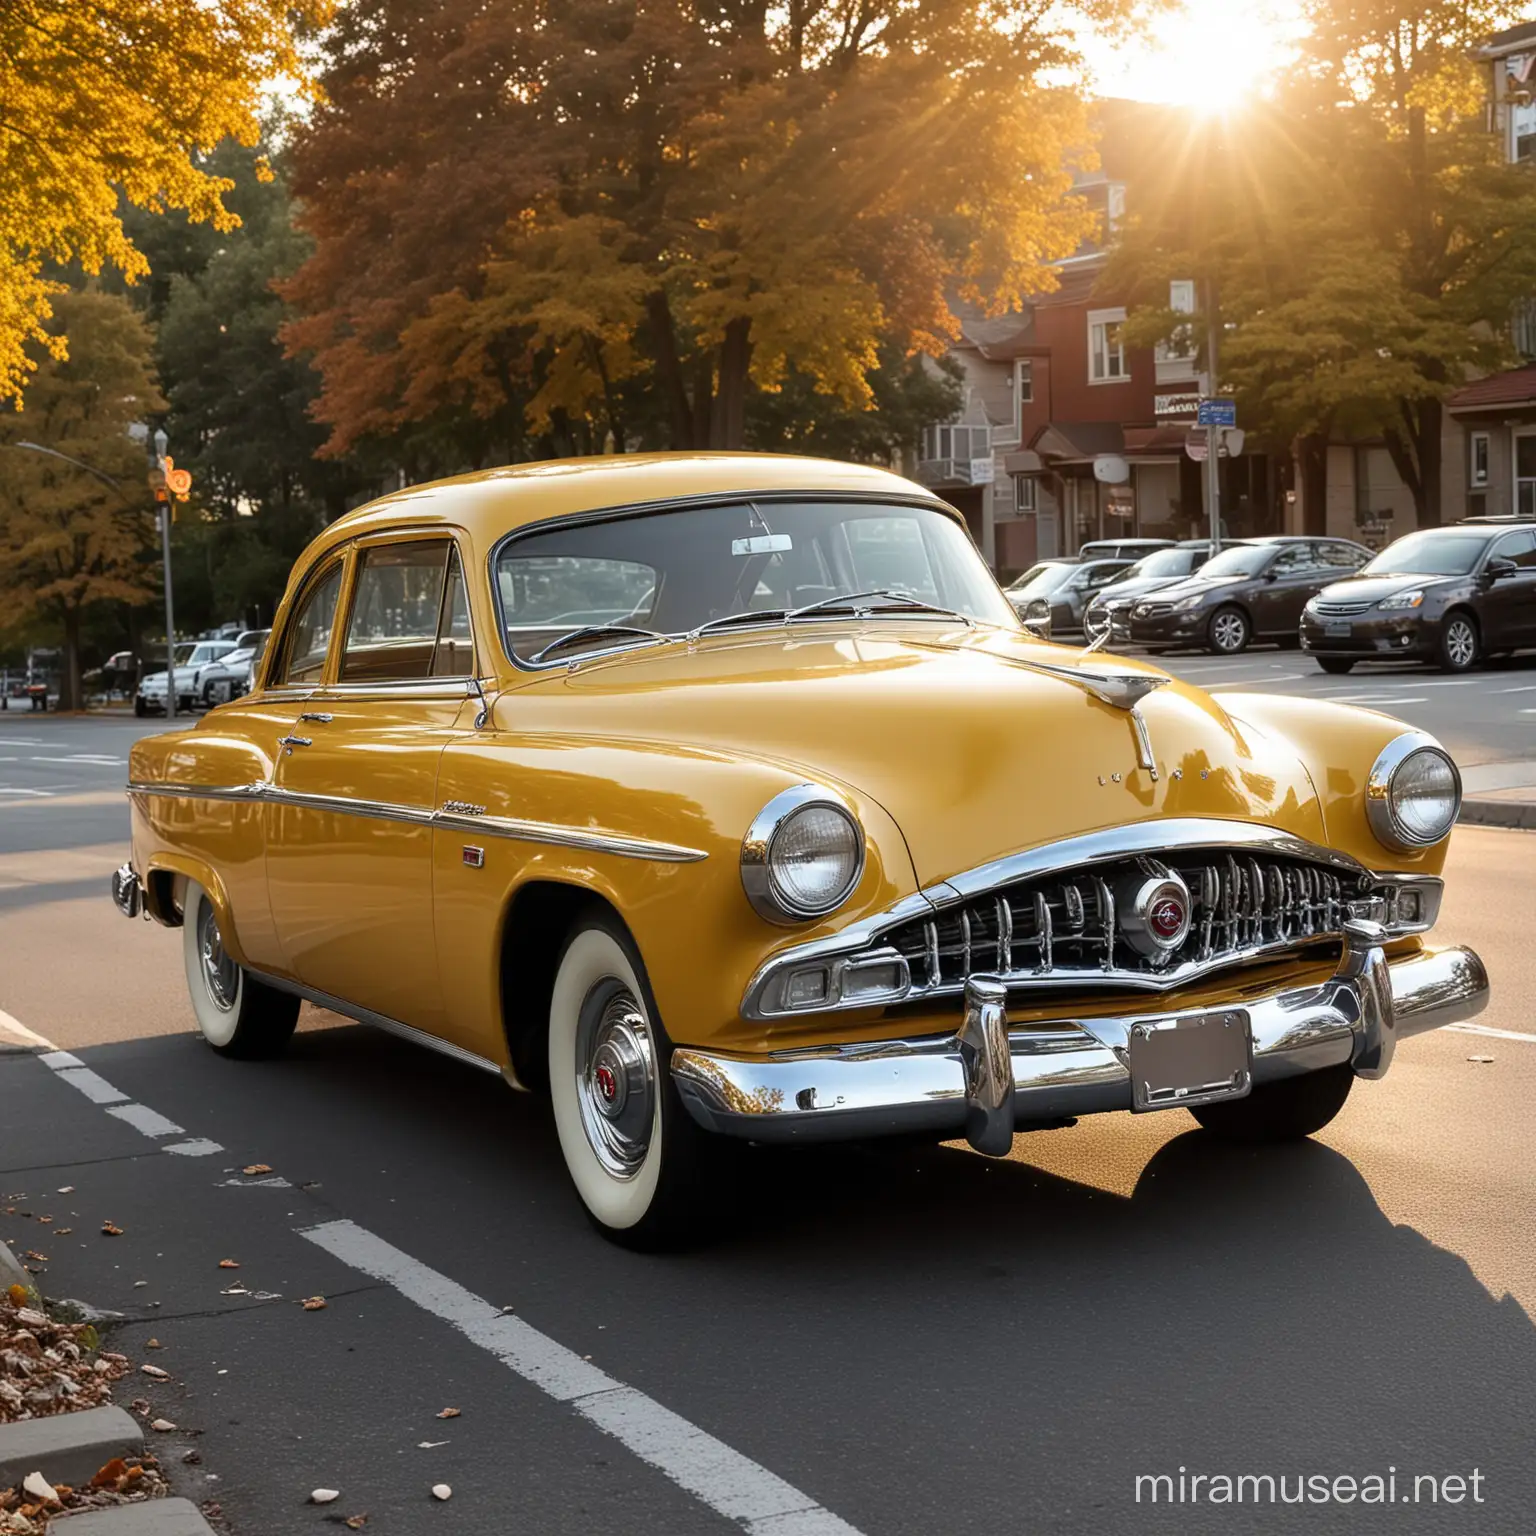 Studebaker Champion 1954 2 puertas, clásico, color mostaza metalico, estacionado en una calle de Trento New Jersey, a las 8 de la mañana, el sol esplendido ilumina este coche de manera especial haciendolo ver hermoso.